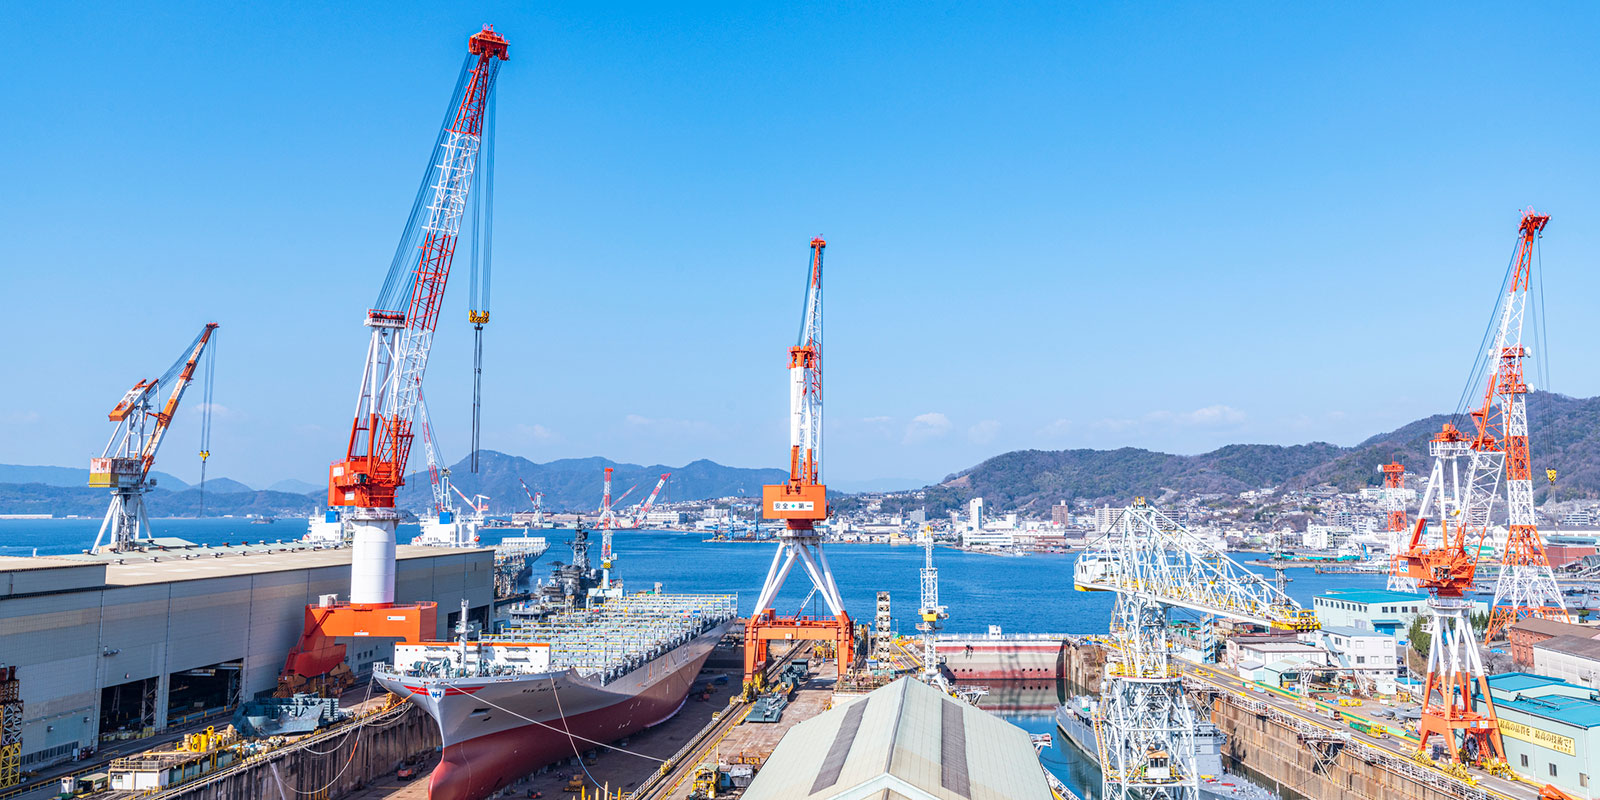 Shipbuilding in Kure, Hiroshima Prefecture | PIXSTAR/PIXTA